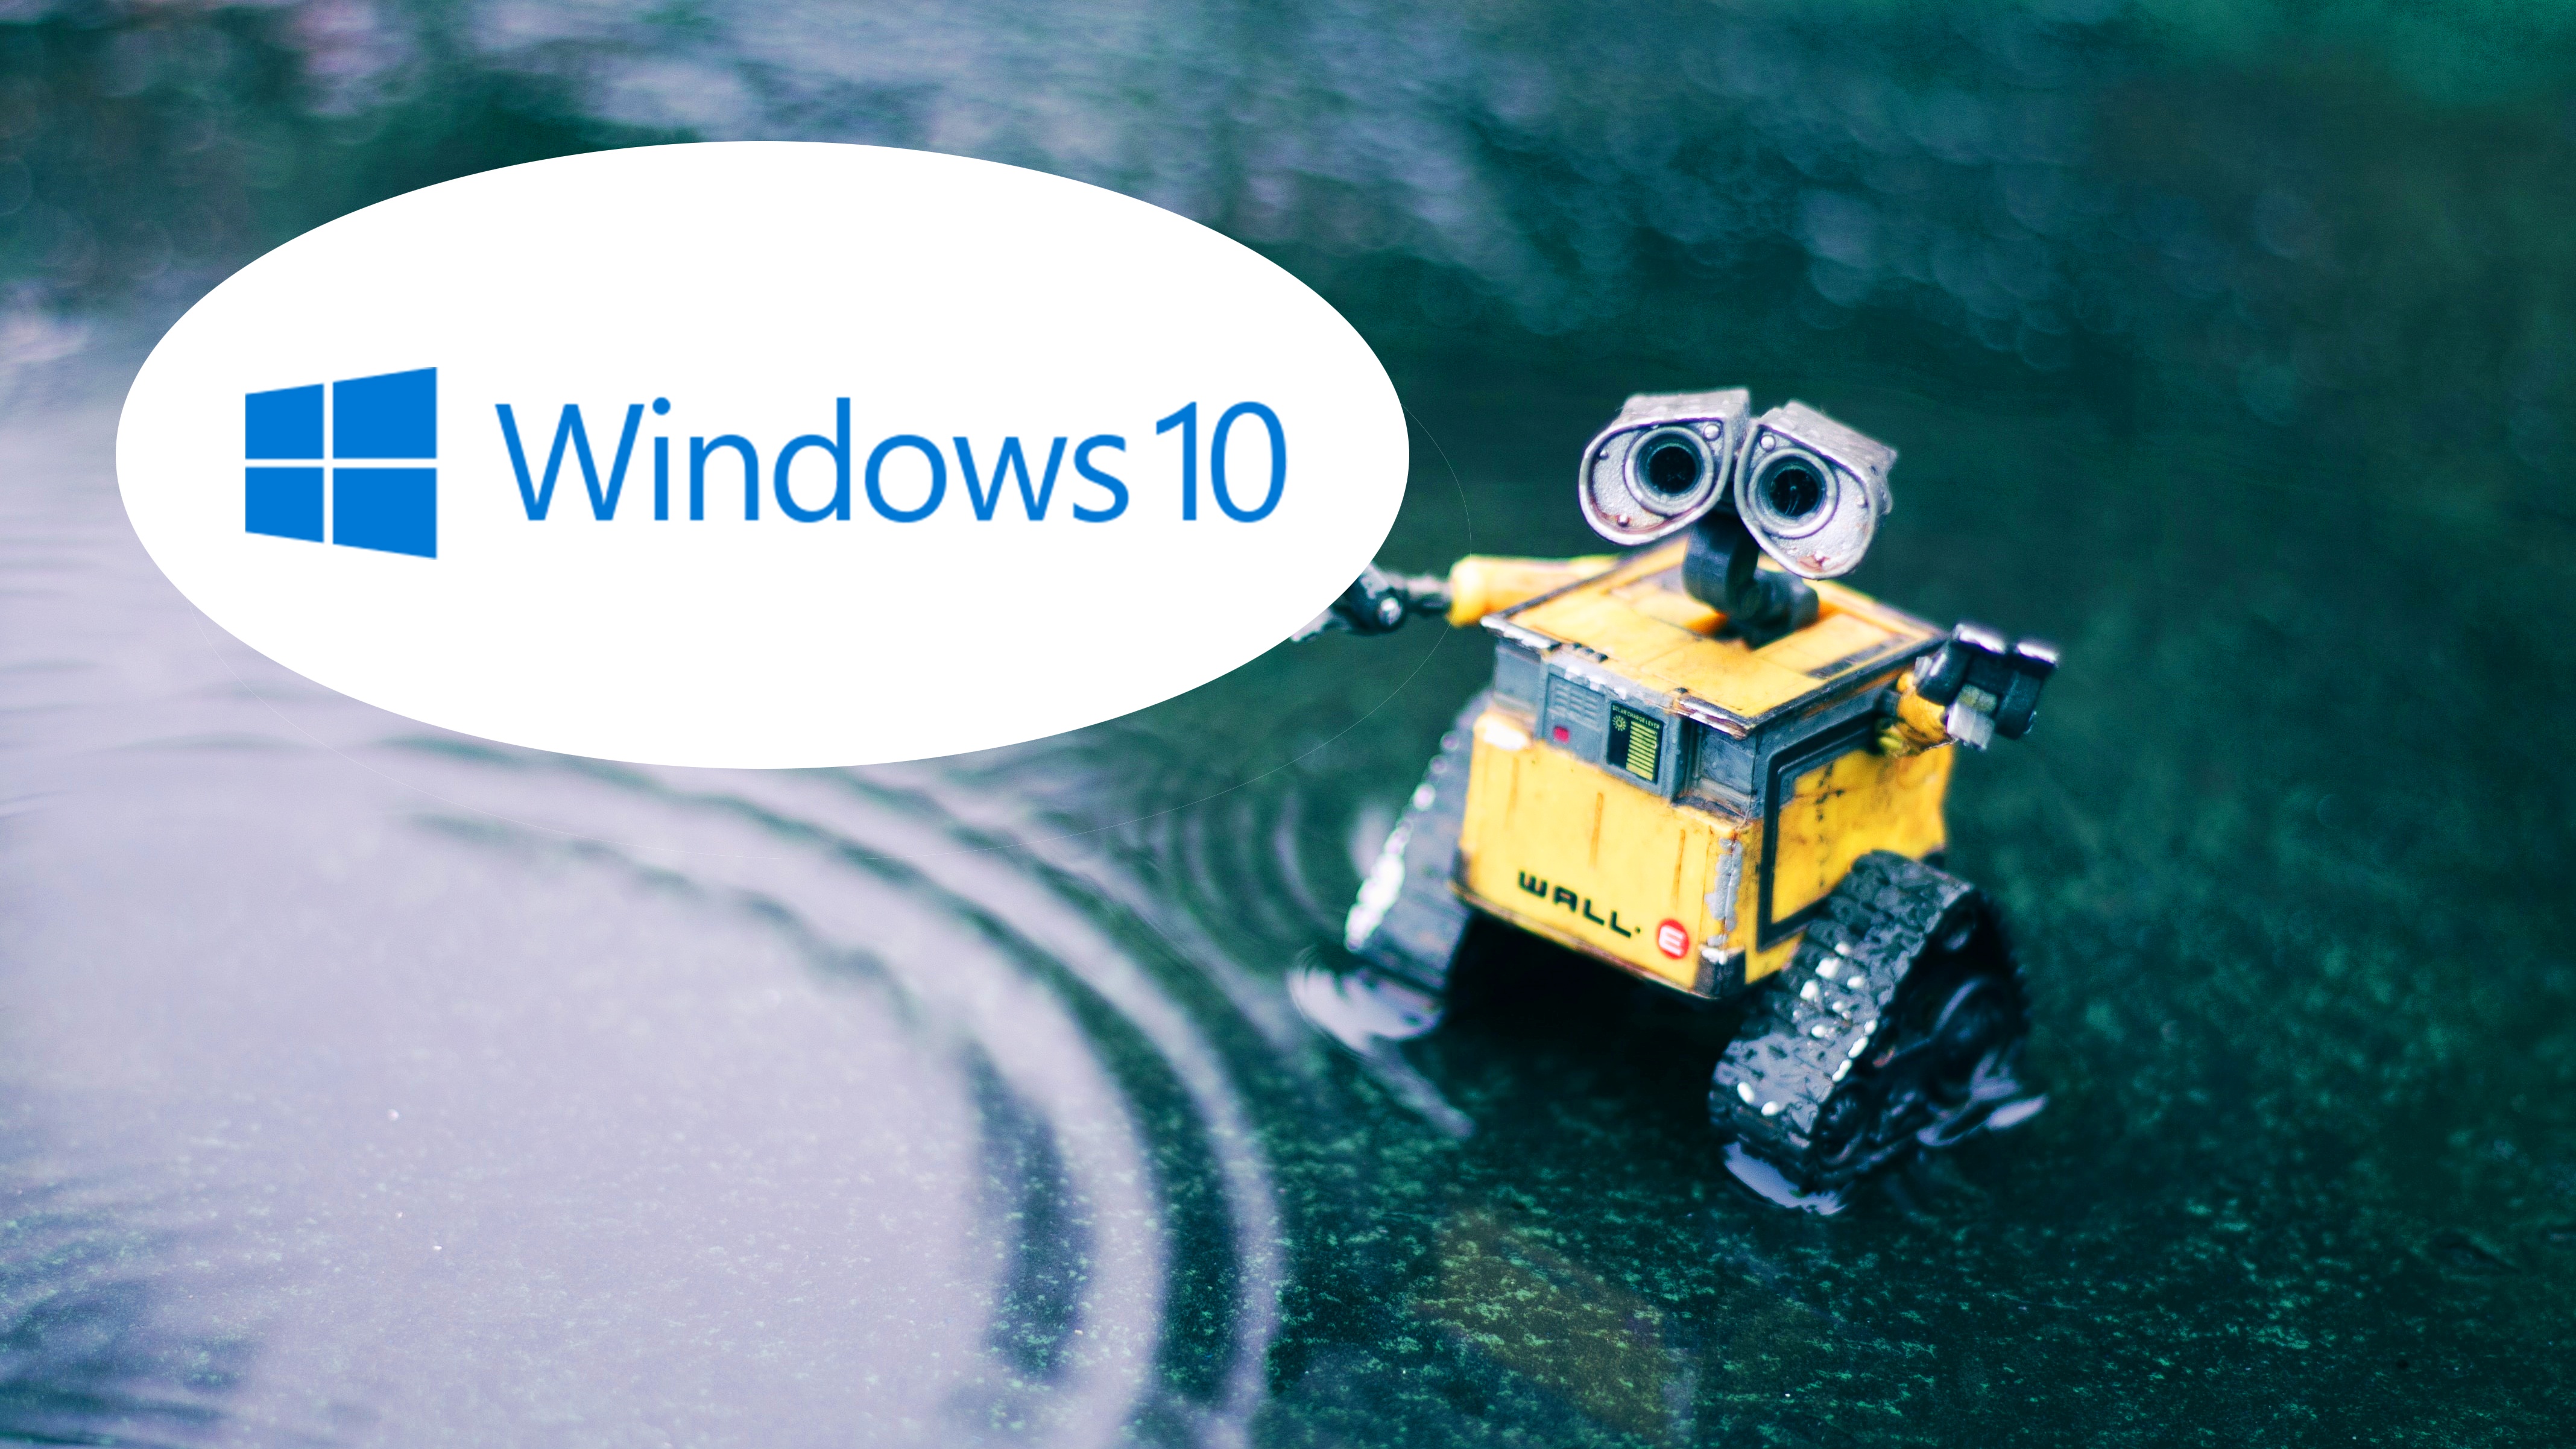 #Windows 10-Updates nur gegen Bezahlung: Was nach einer guten Option klingt, könnte zum Problem für die Umwelt werden